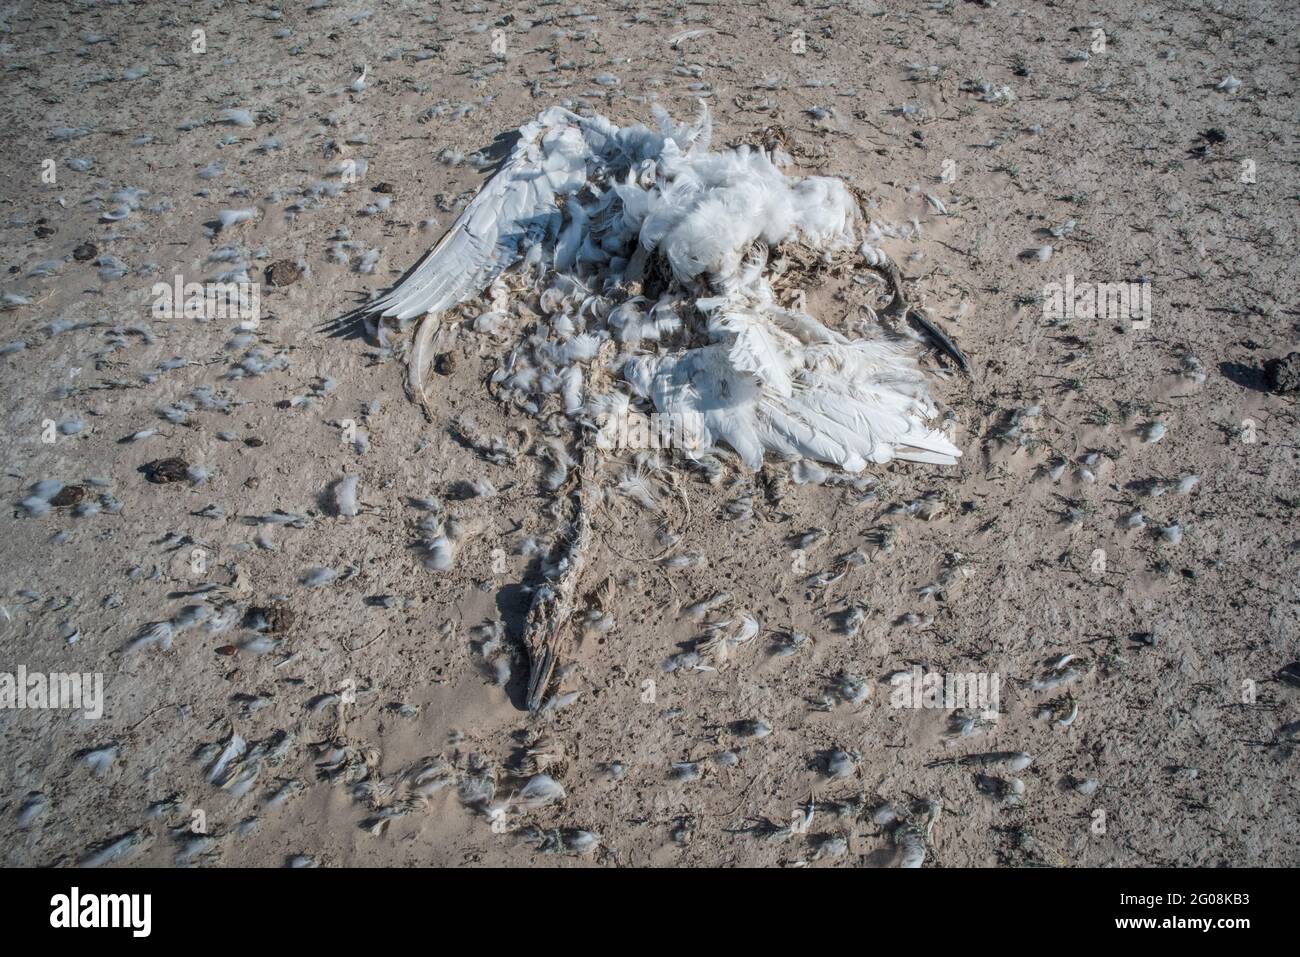 Un cigno morto di tundra (Cygnus columbianus) si trova nel fango essiccato di un'ex zona umida della California. Foto Stock